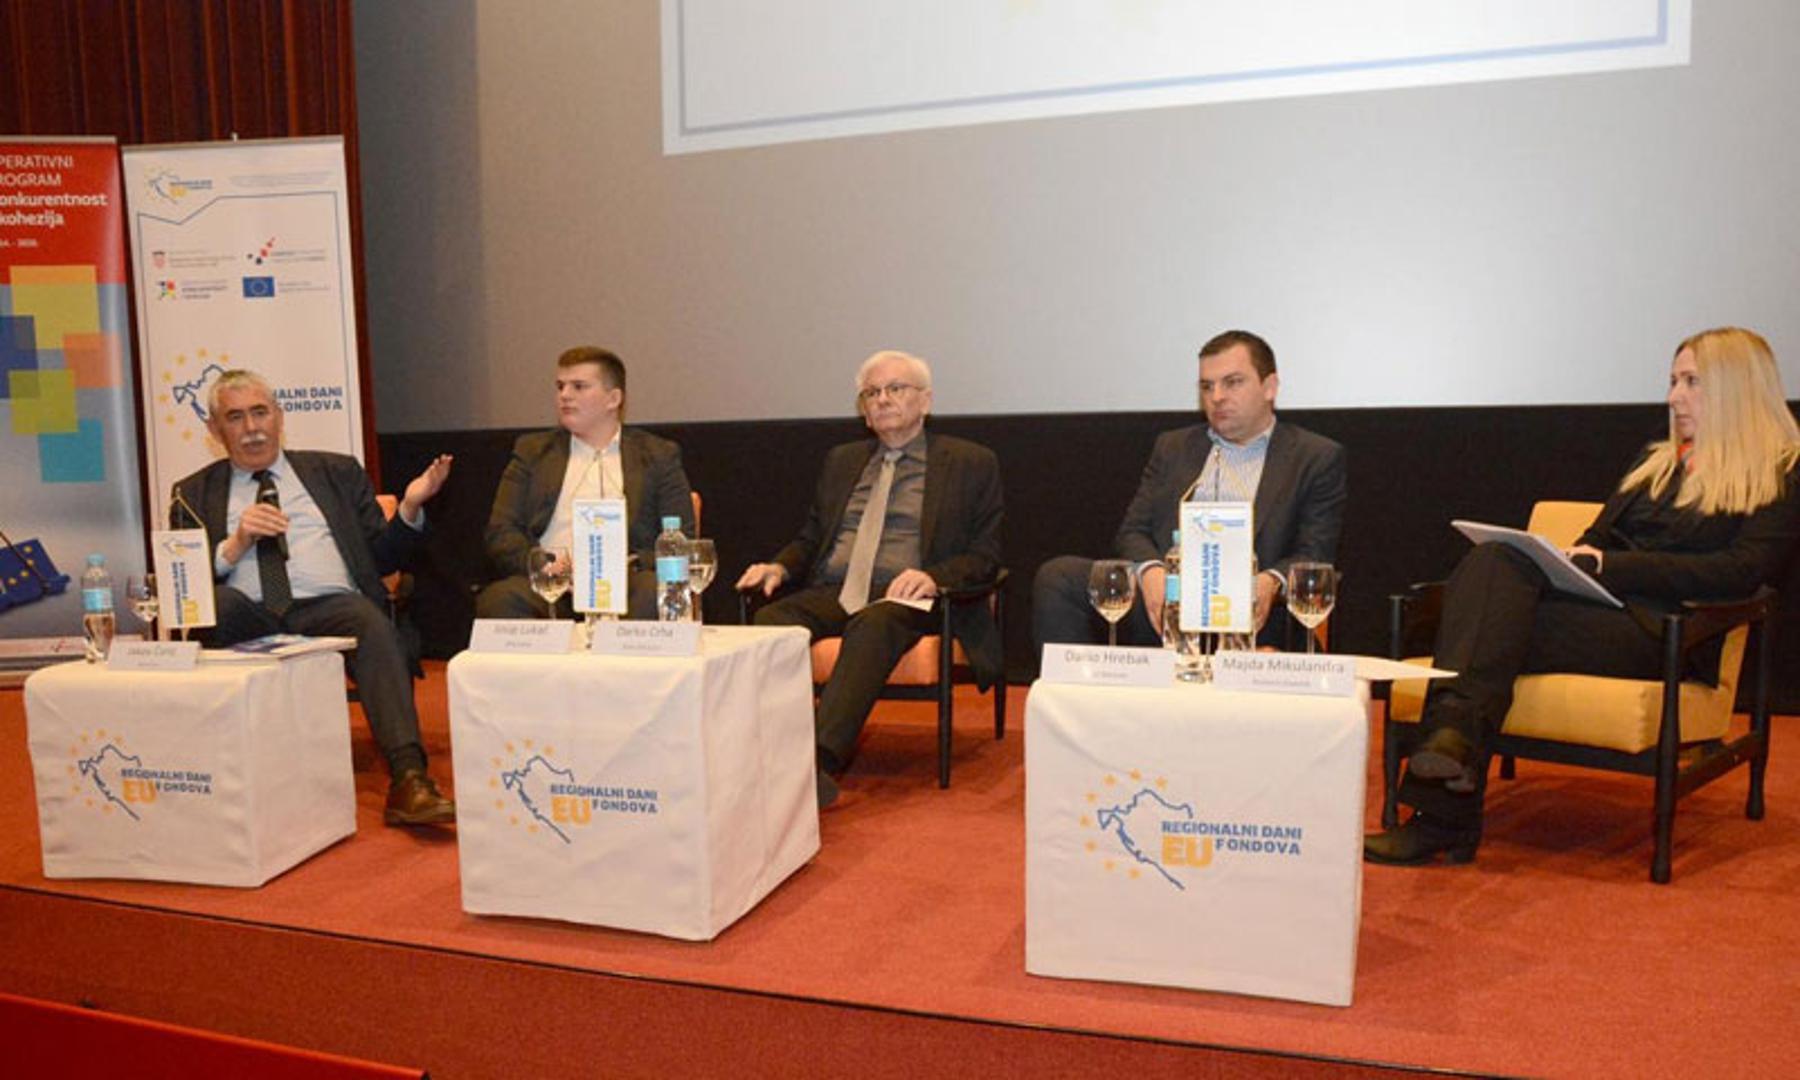 Na panel raspravi poduzetnici su govorili o svojim iskustvima s EU fondovima